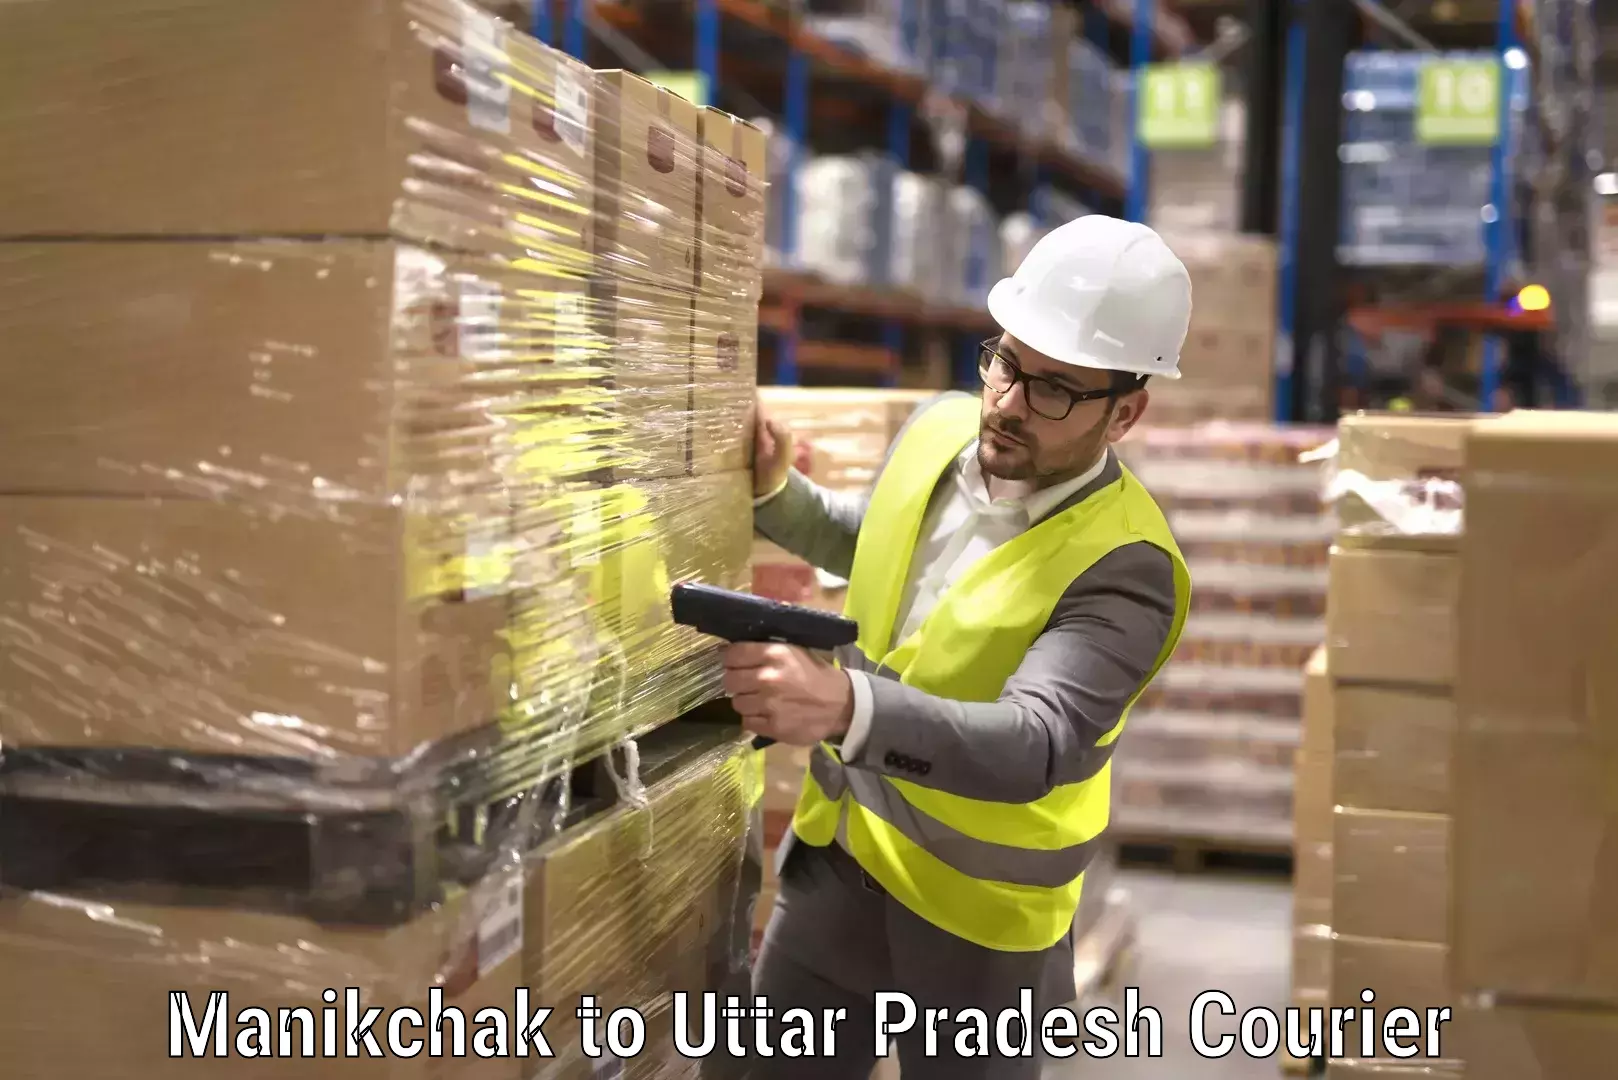 Quality moving company Manikchak to Uttar Pradesh